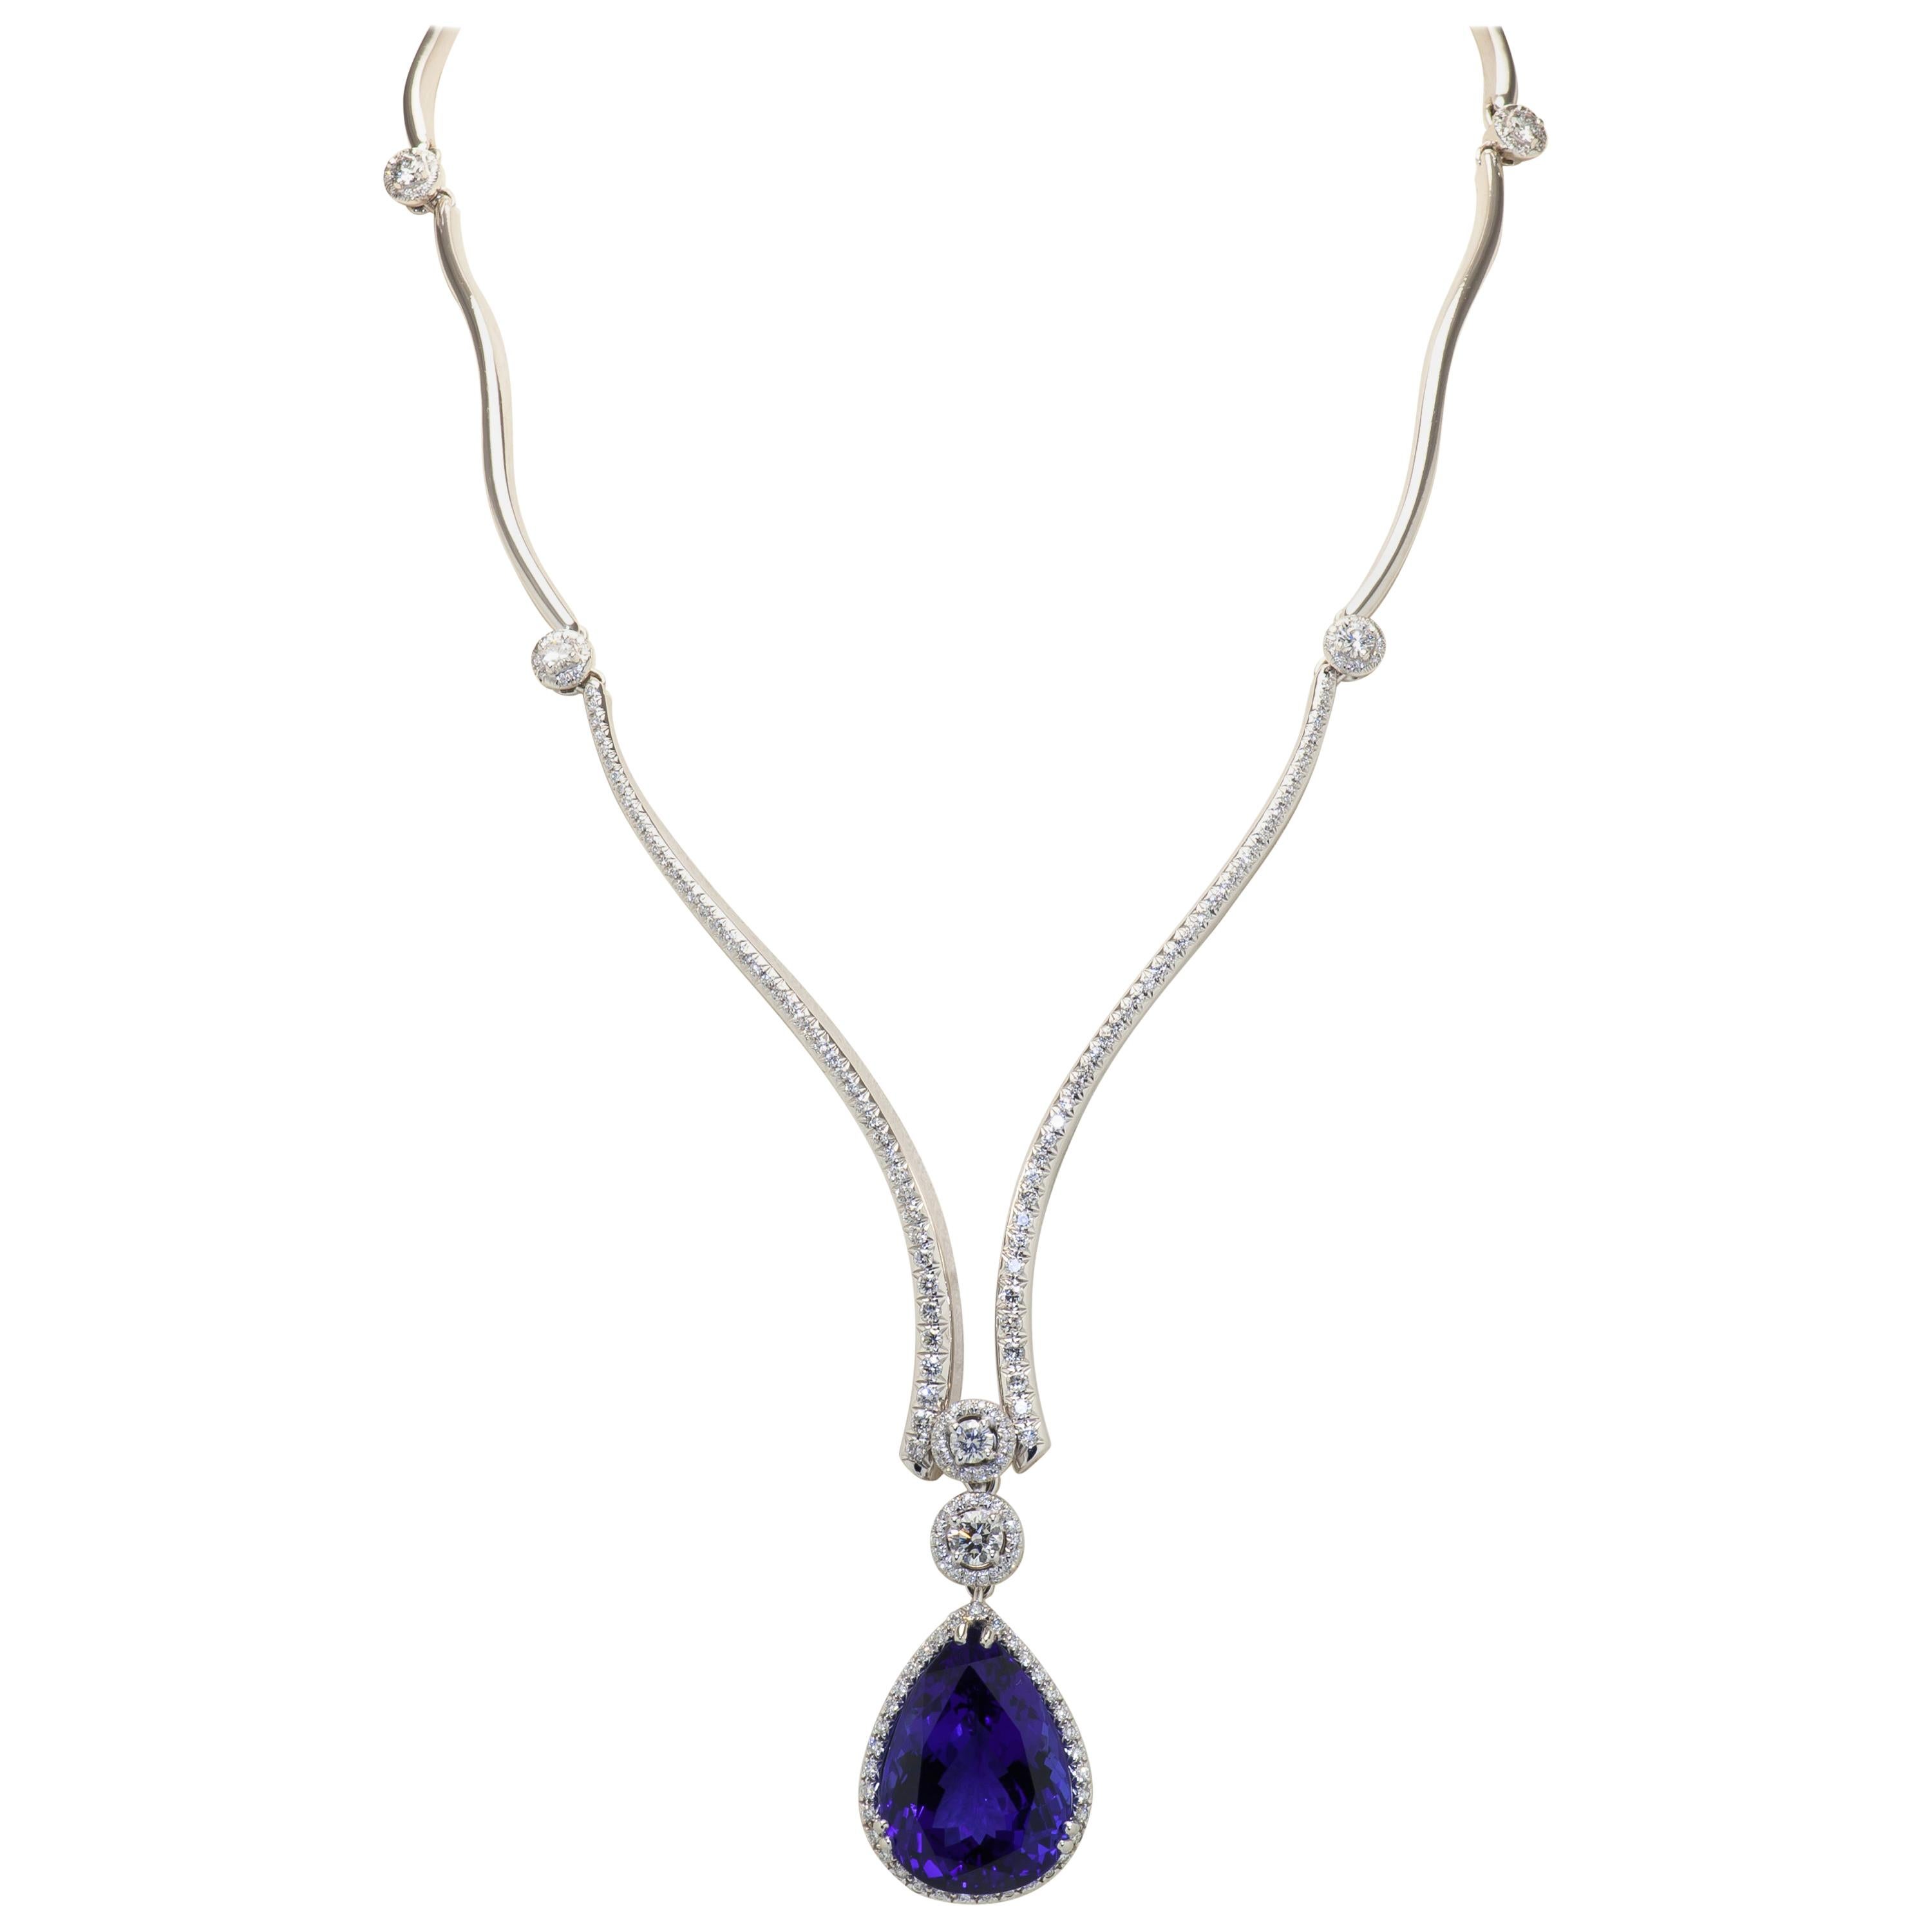 Diamond Necklace Suspending a Spectacular 31 Carat Tanzanite Drop Pendant